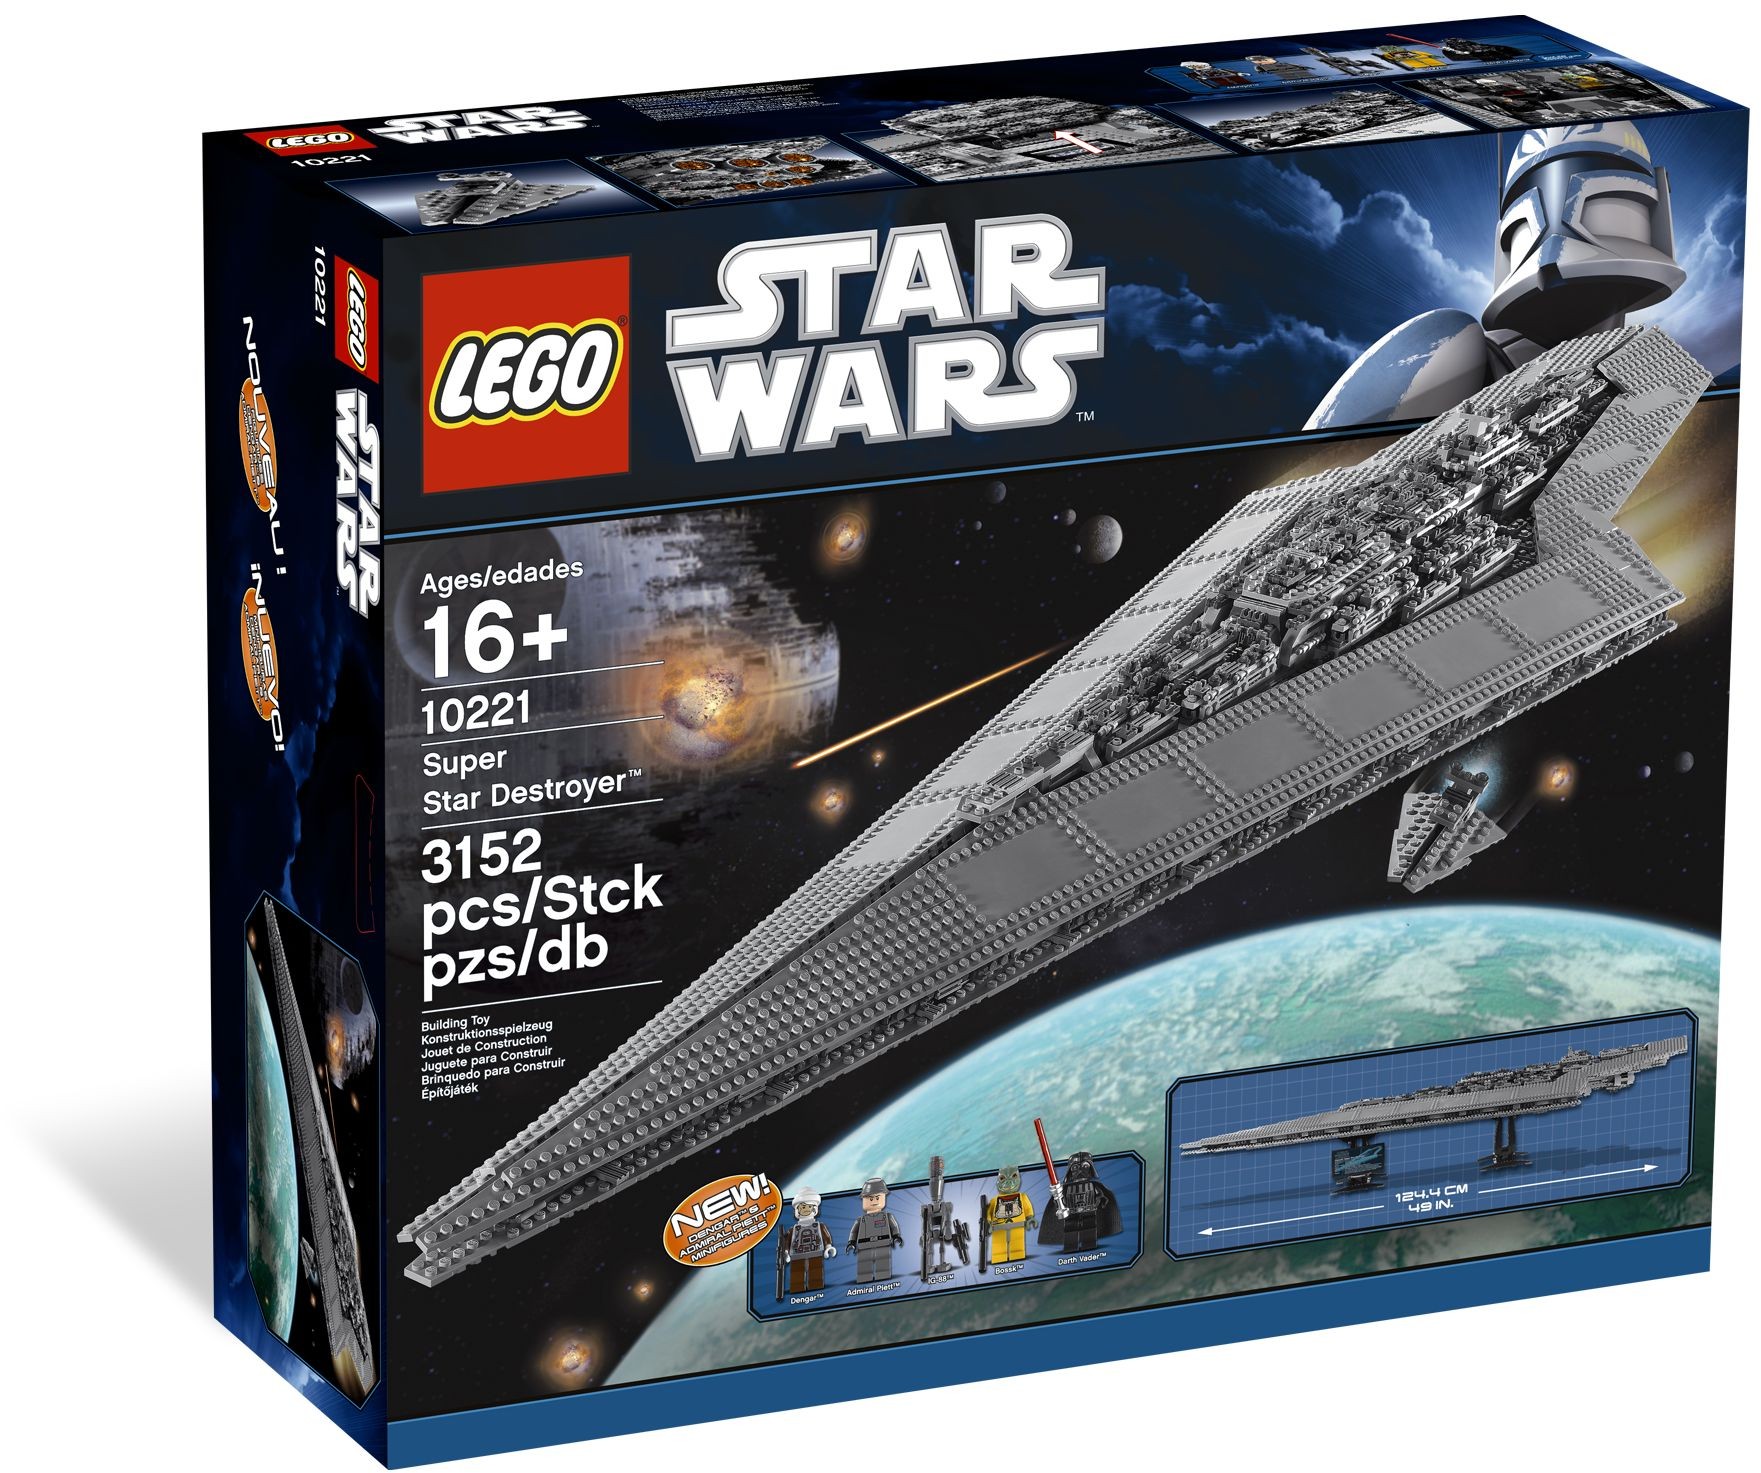 Landsdækkende nyheder skillevæg Next LEGO Star Wars UCS Set Reported to be $699 - The Brick Fan